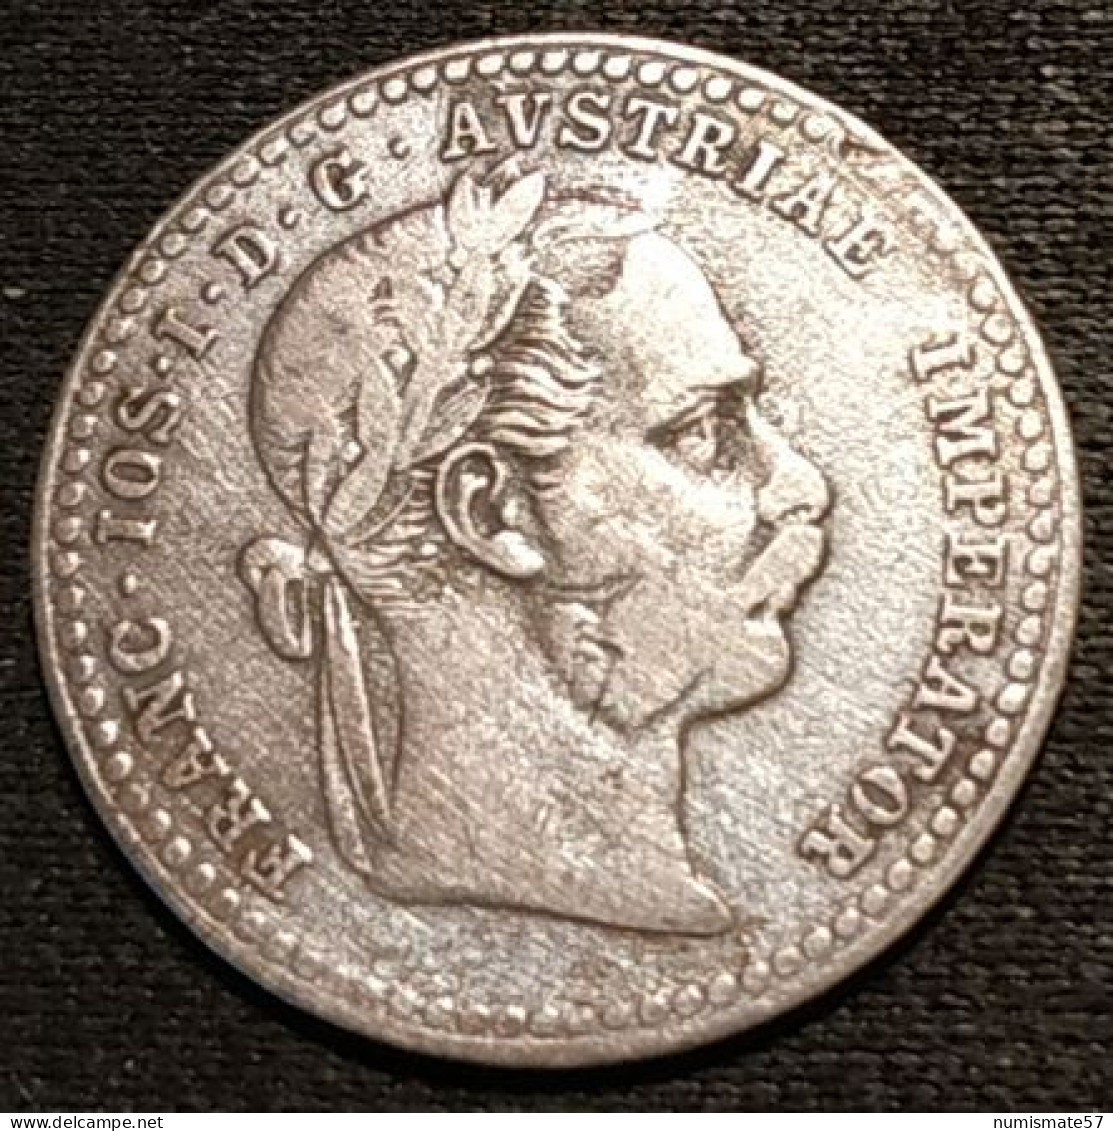 AUTRICHE - AUSTRIA - 10 KREUZER 1870 - Argent - Silver - Franz Joseph I - KM 2206 - Austria